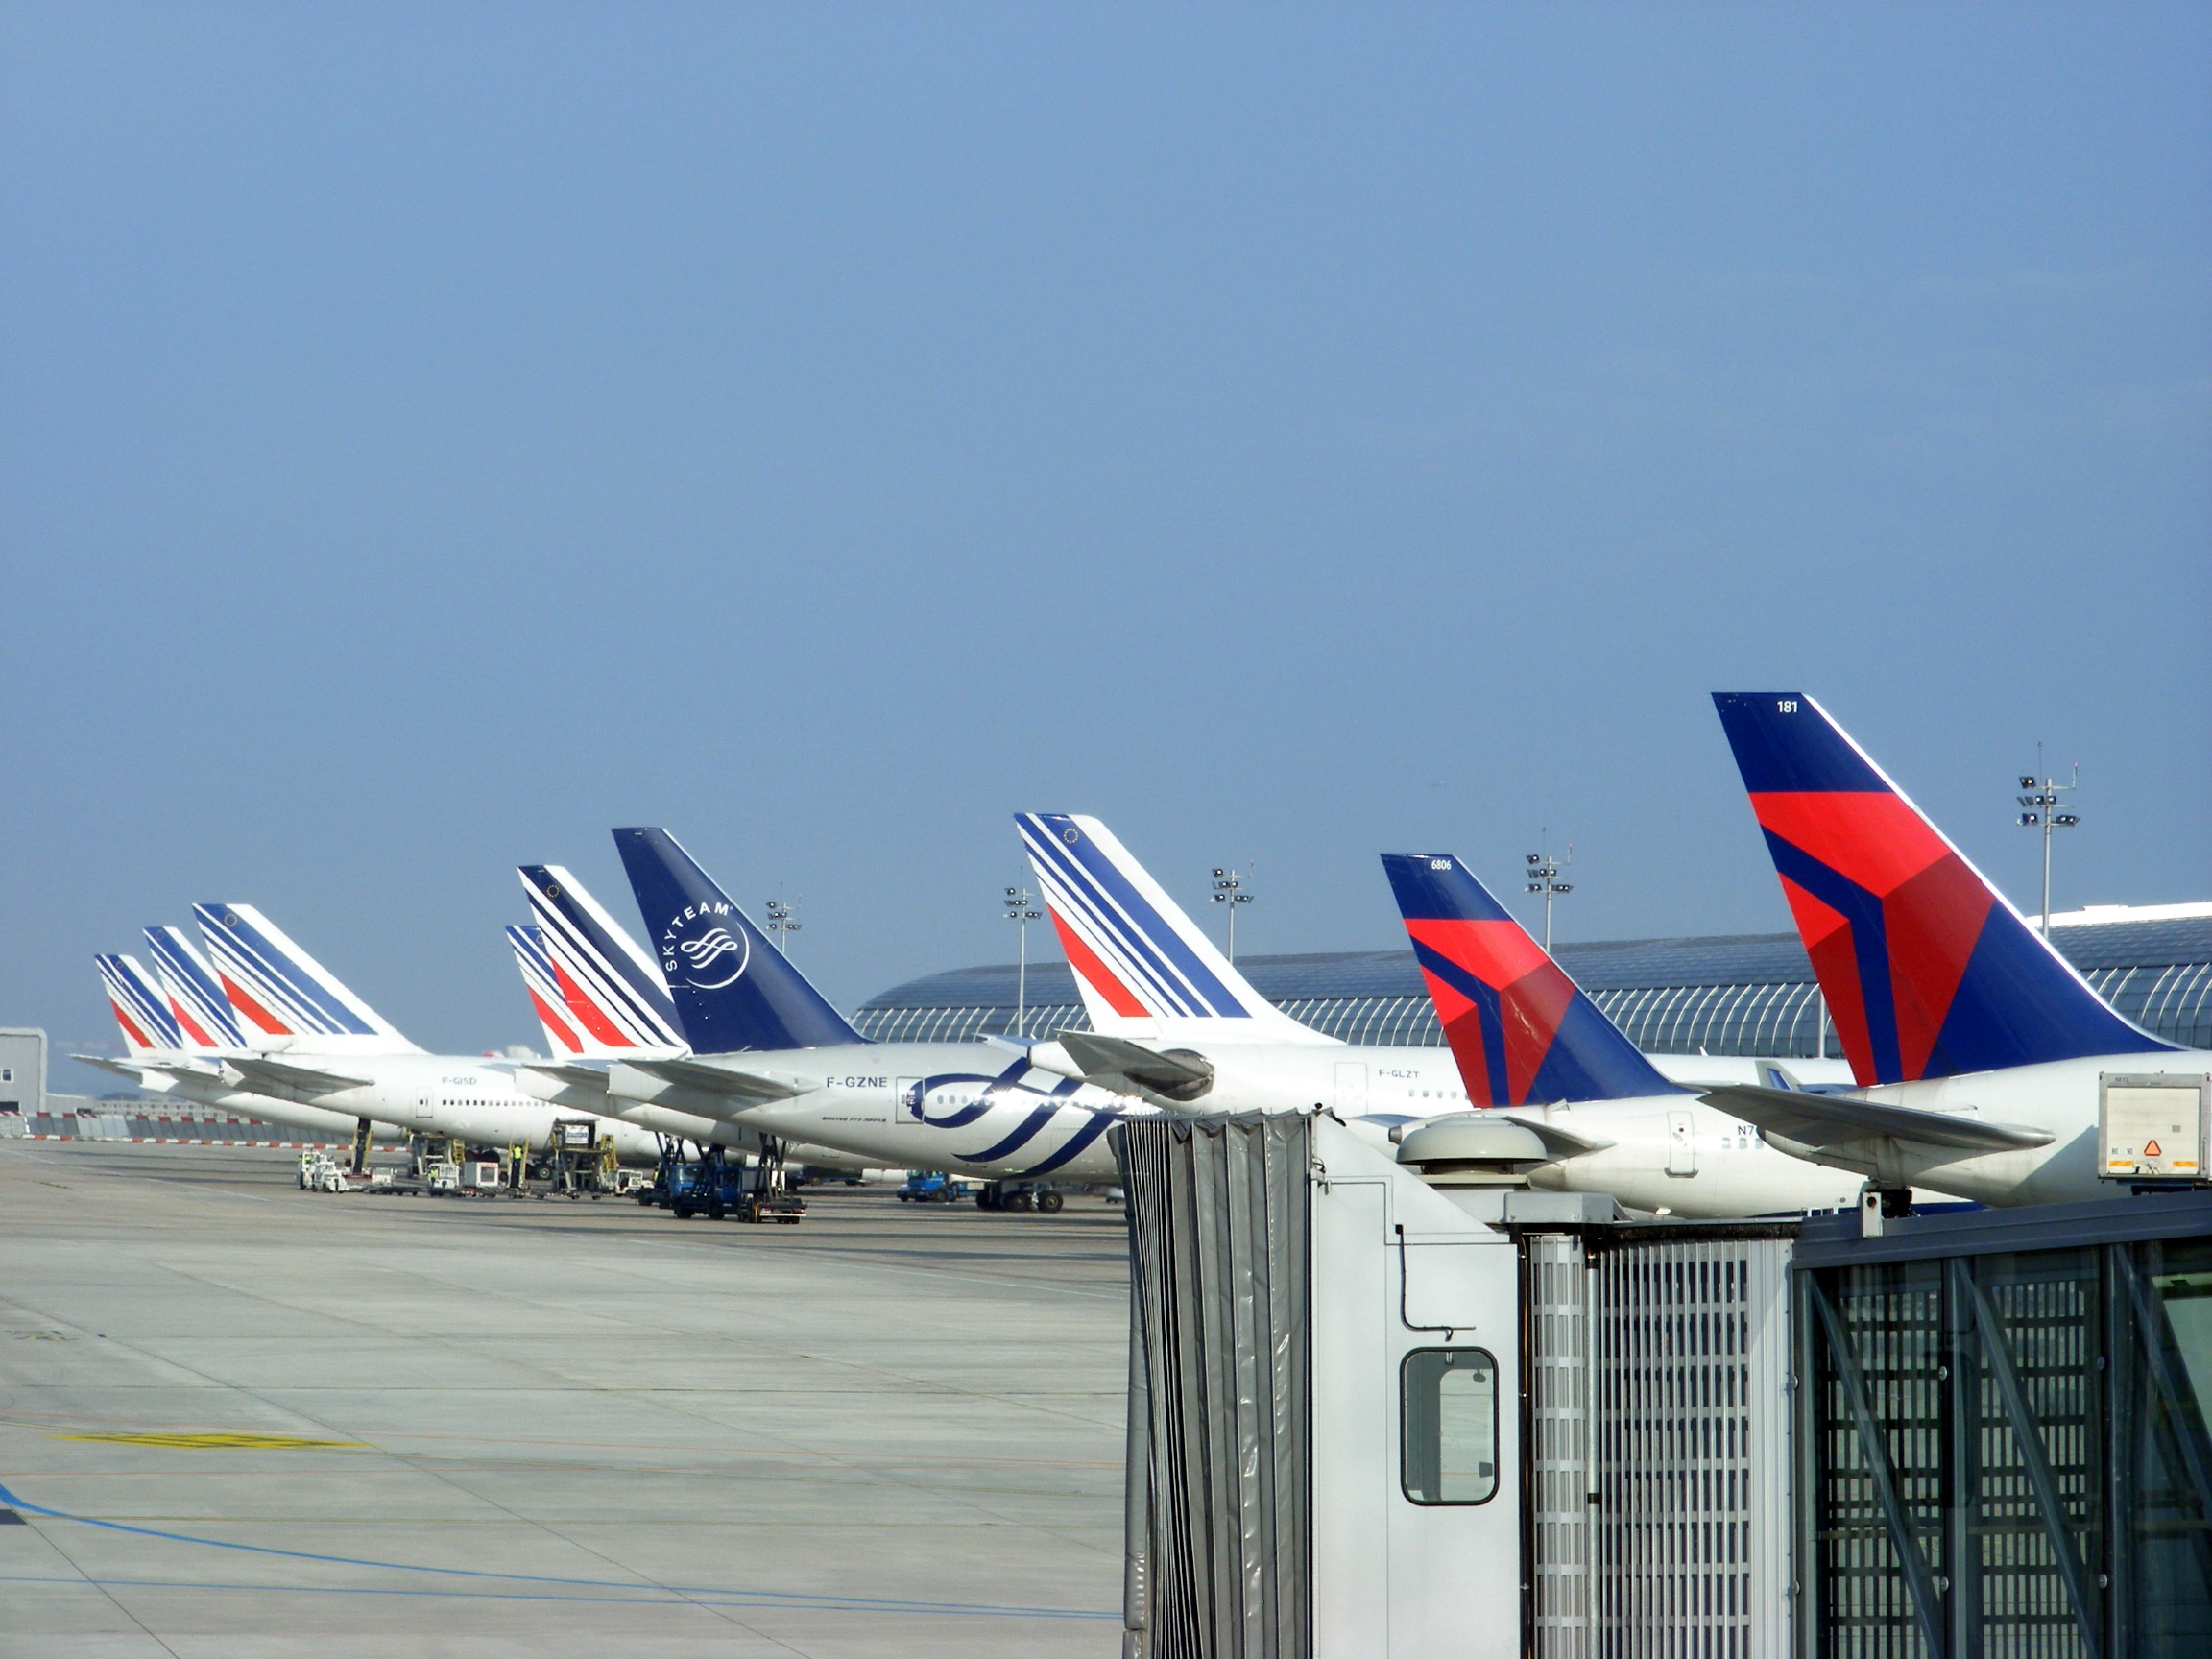     Aéroports de Paris annonce la fermeture du terminal Orly 2

